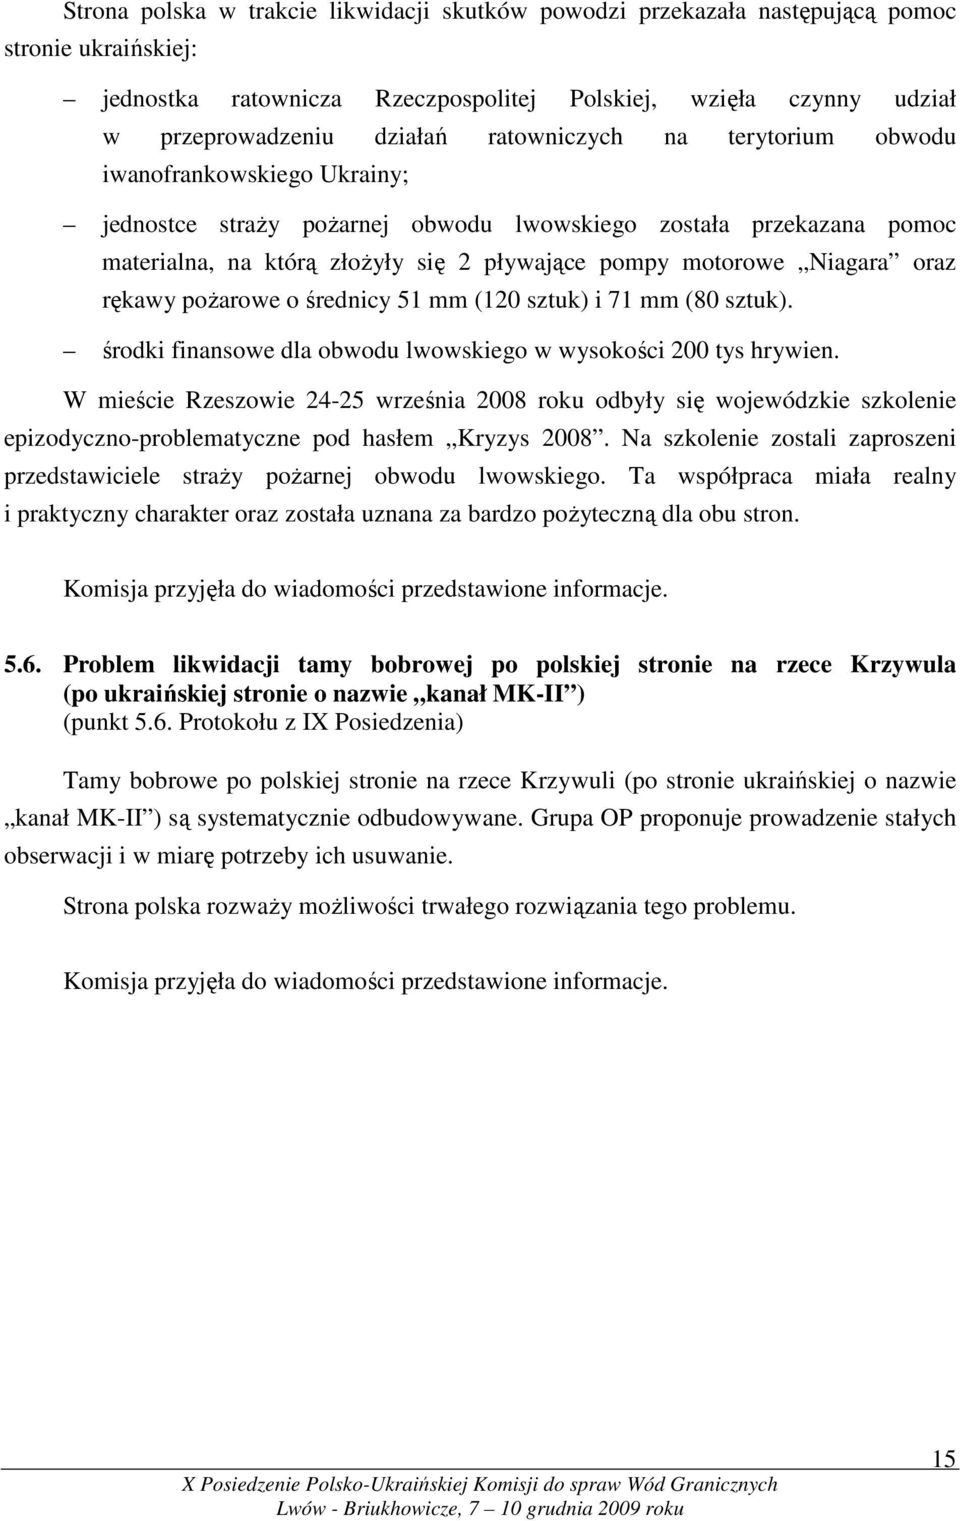 oraz rękawy poŝarowe o średnicy 51 mm (120 sztuk) i 71 mm (80 sztuk). środki finansowe dla obwodu lwowskiego w wysokości 200 tys hrywien.